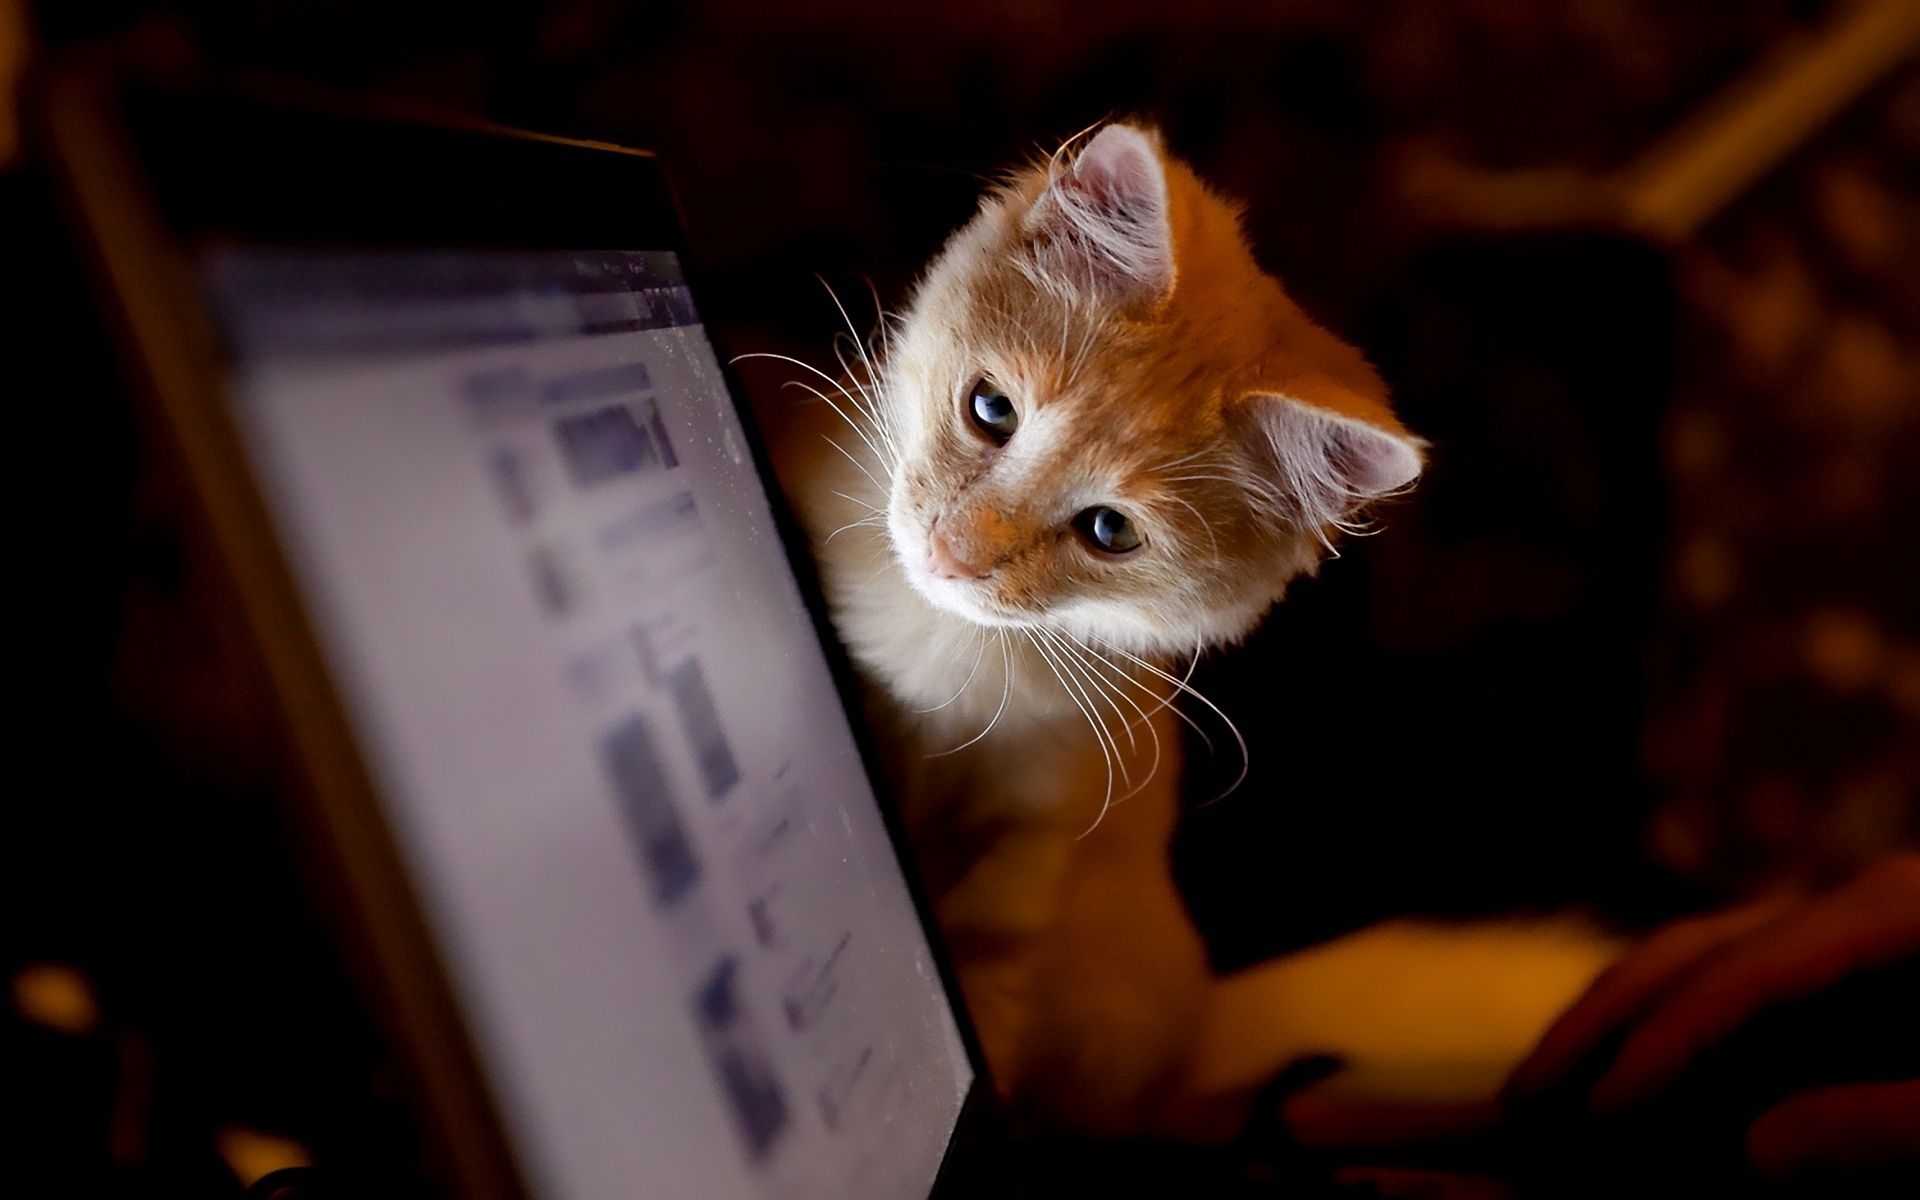 animals, kitty, kitten, computer, curiosity